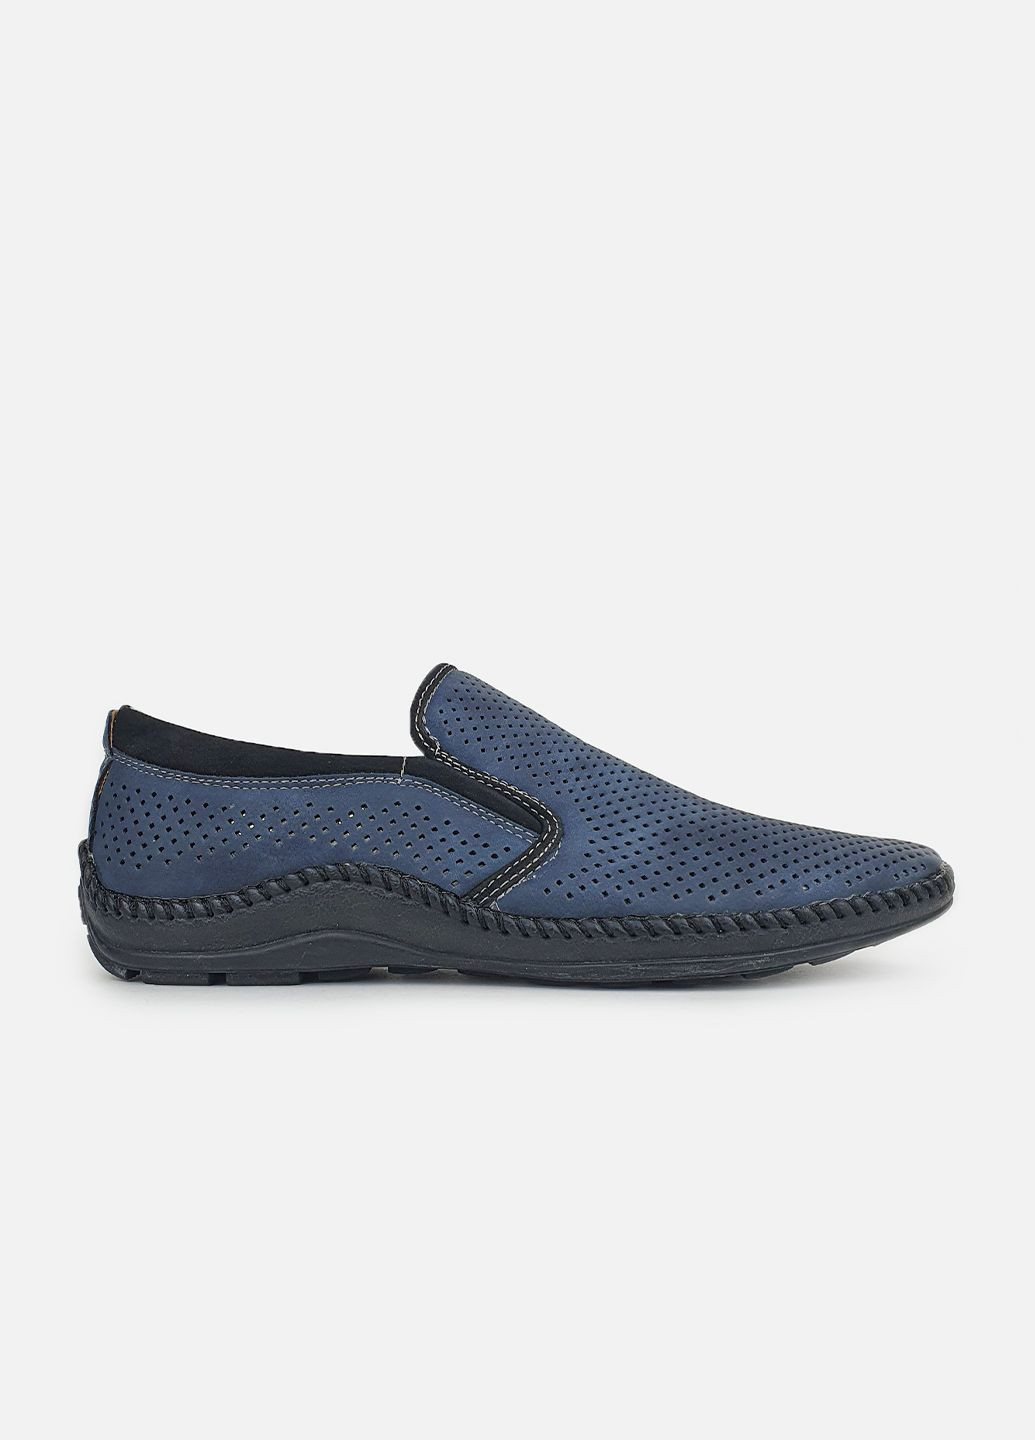 Чоловічі літні туфлі,мокасини перфорація сині екошкіра,Flymo,D1372-5синкмок,40 Fashion (285103957)